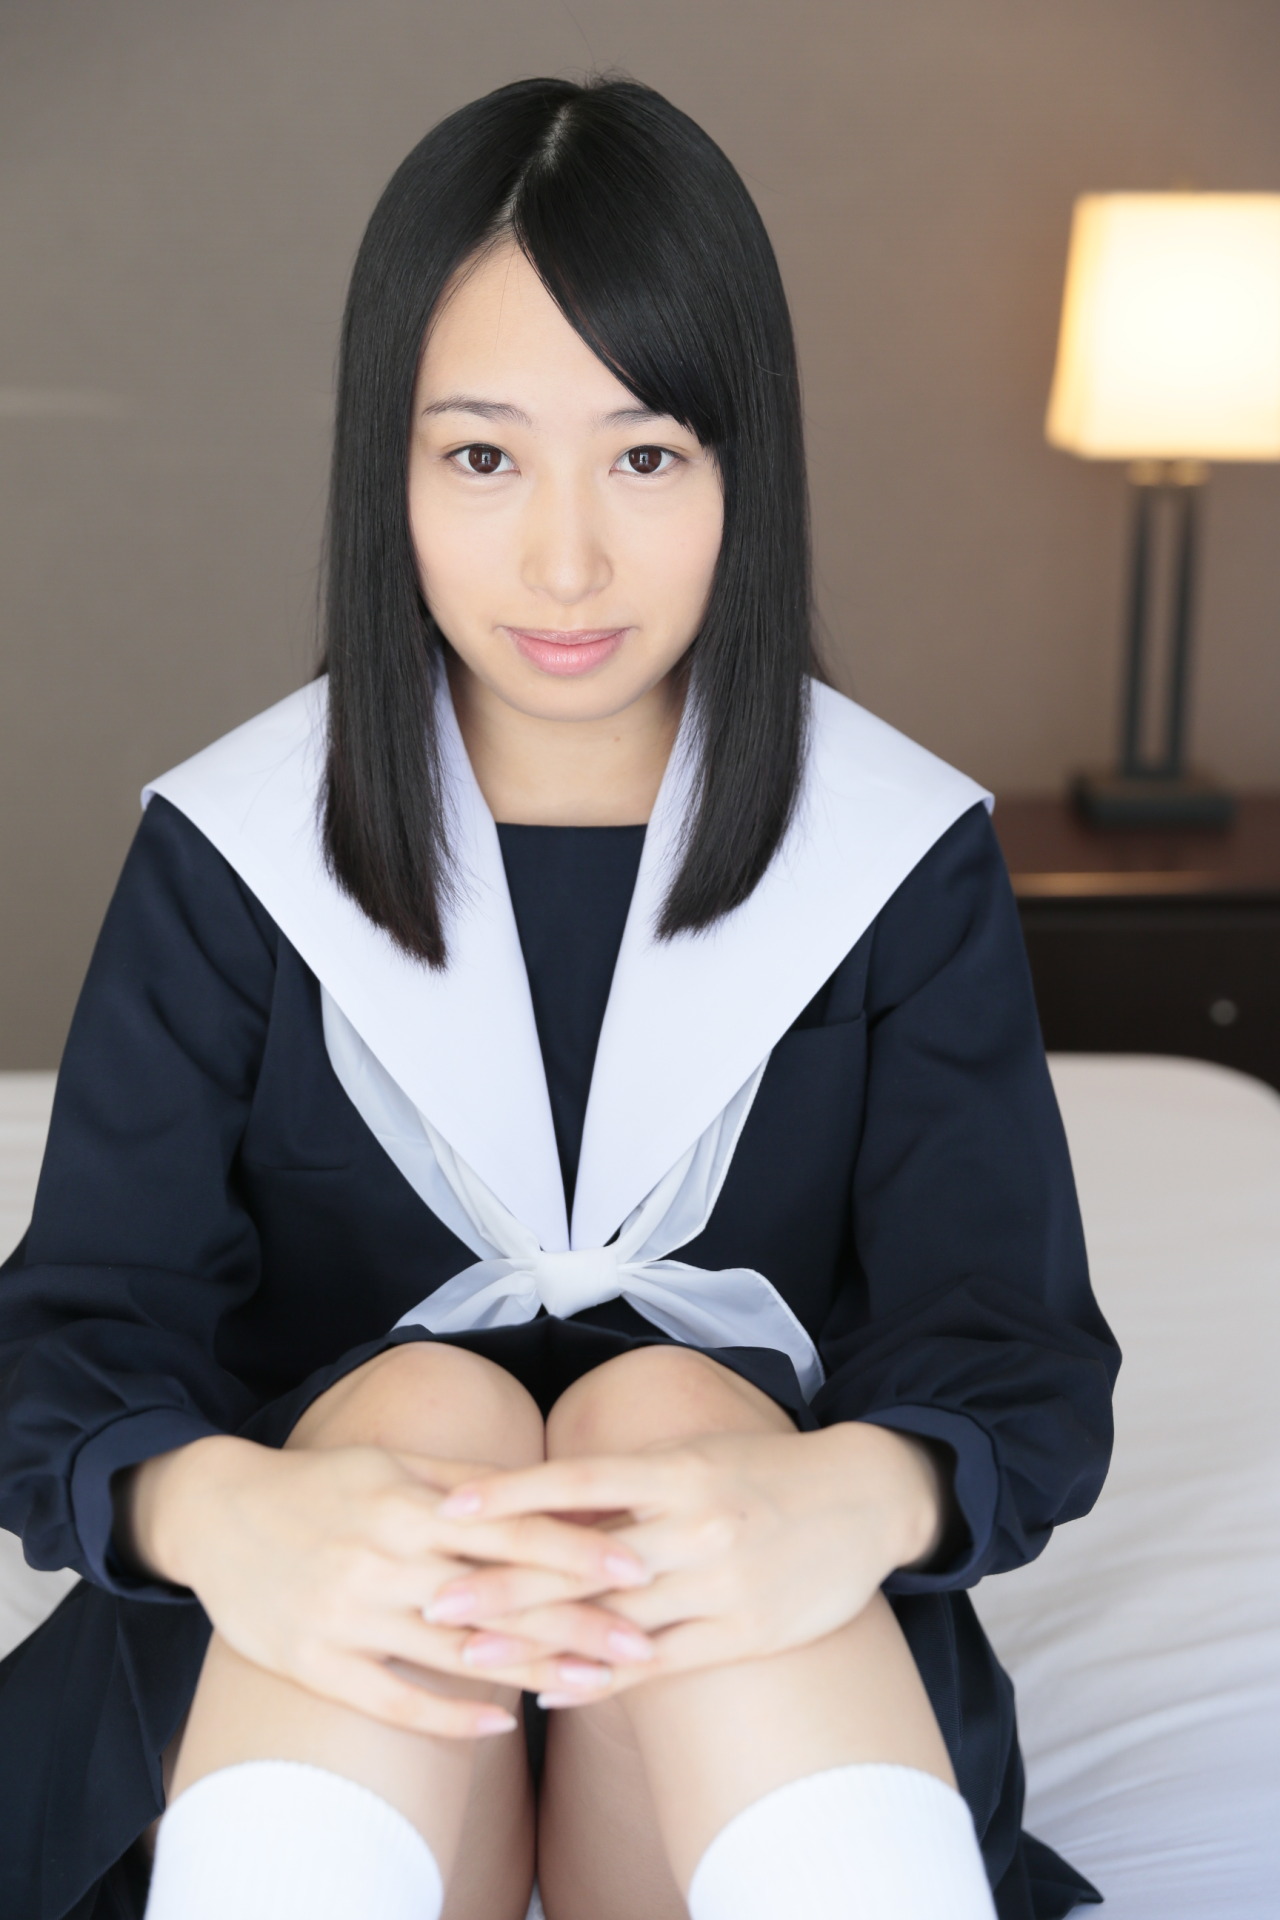 純潔ロリィタと性交 丘えりな | 日本のアダルト動画 熟女 ときどき 若い娘